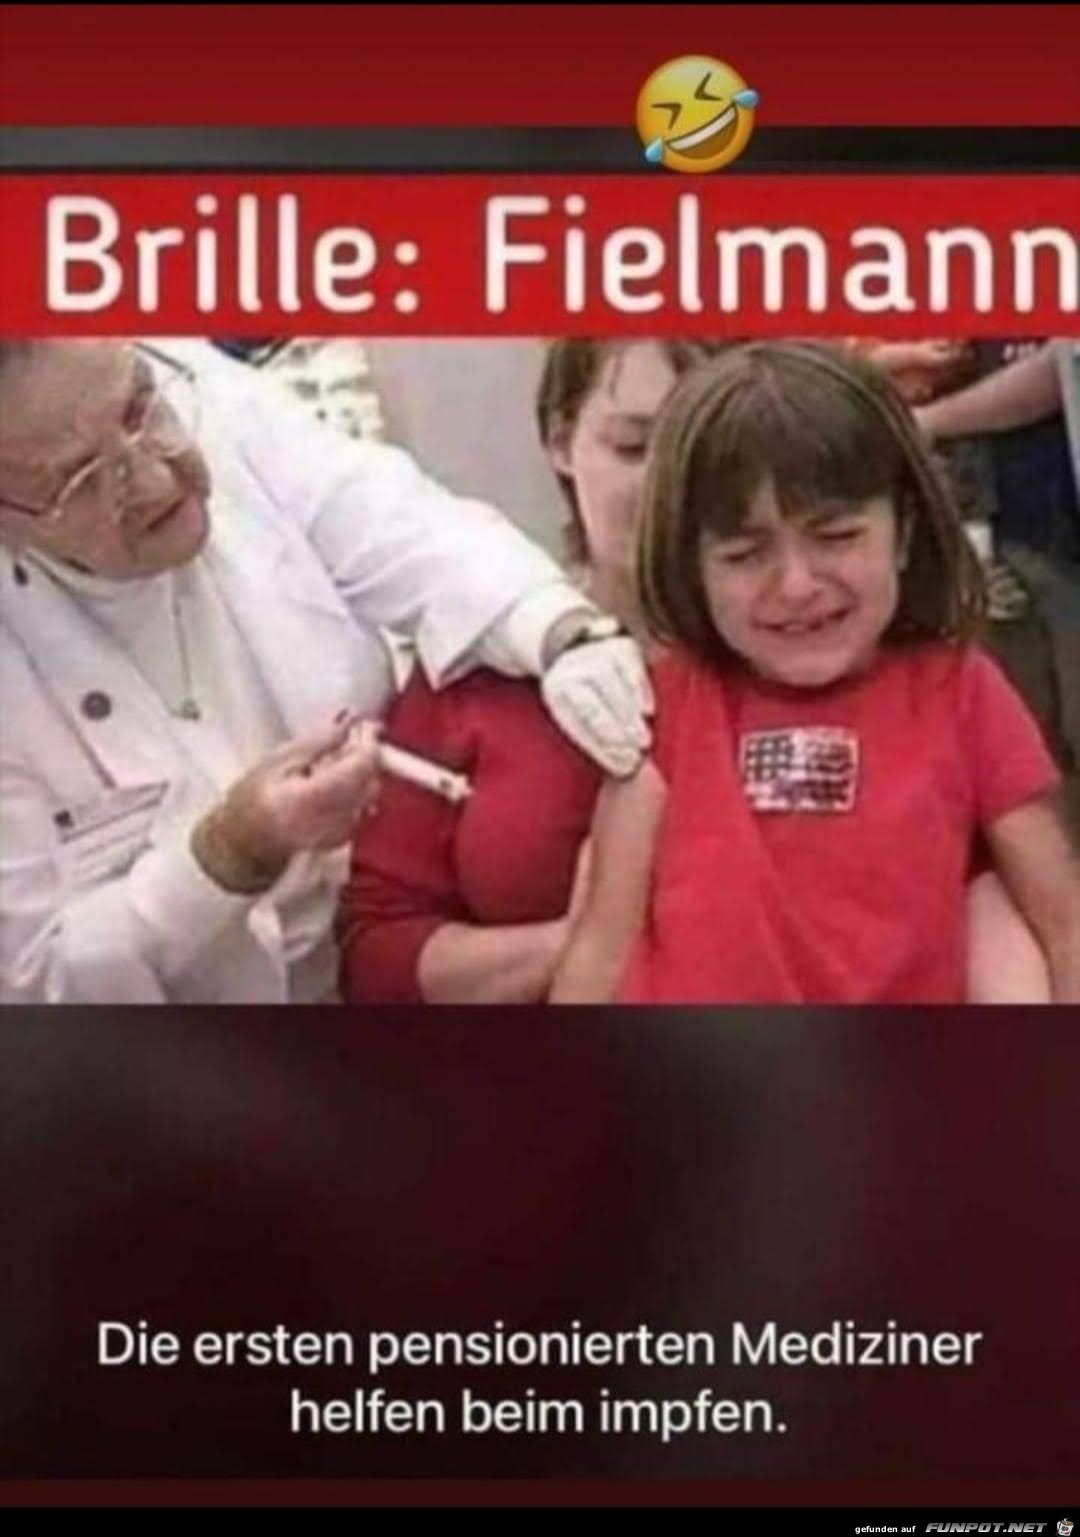 Brille Fielmann